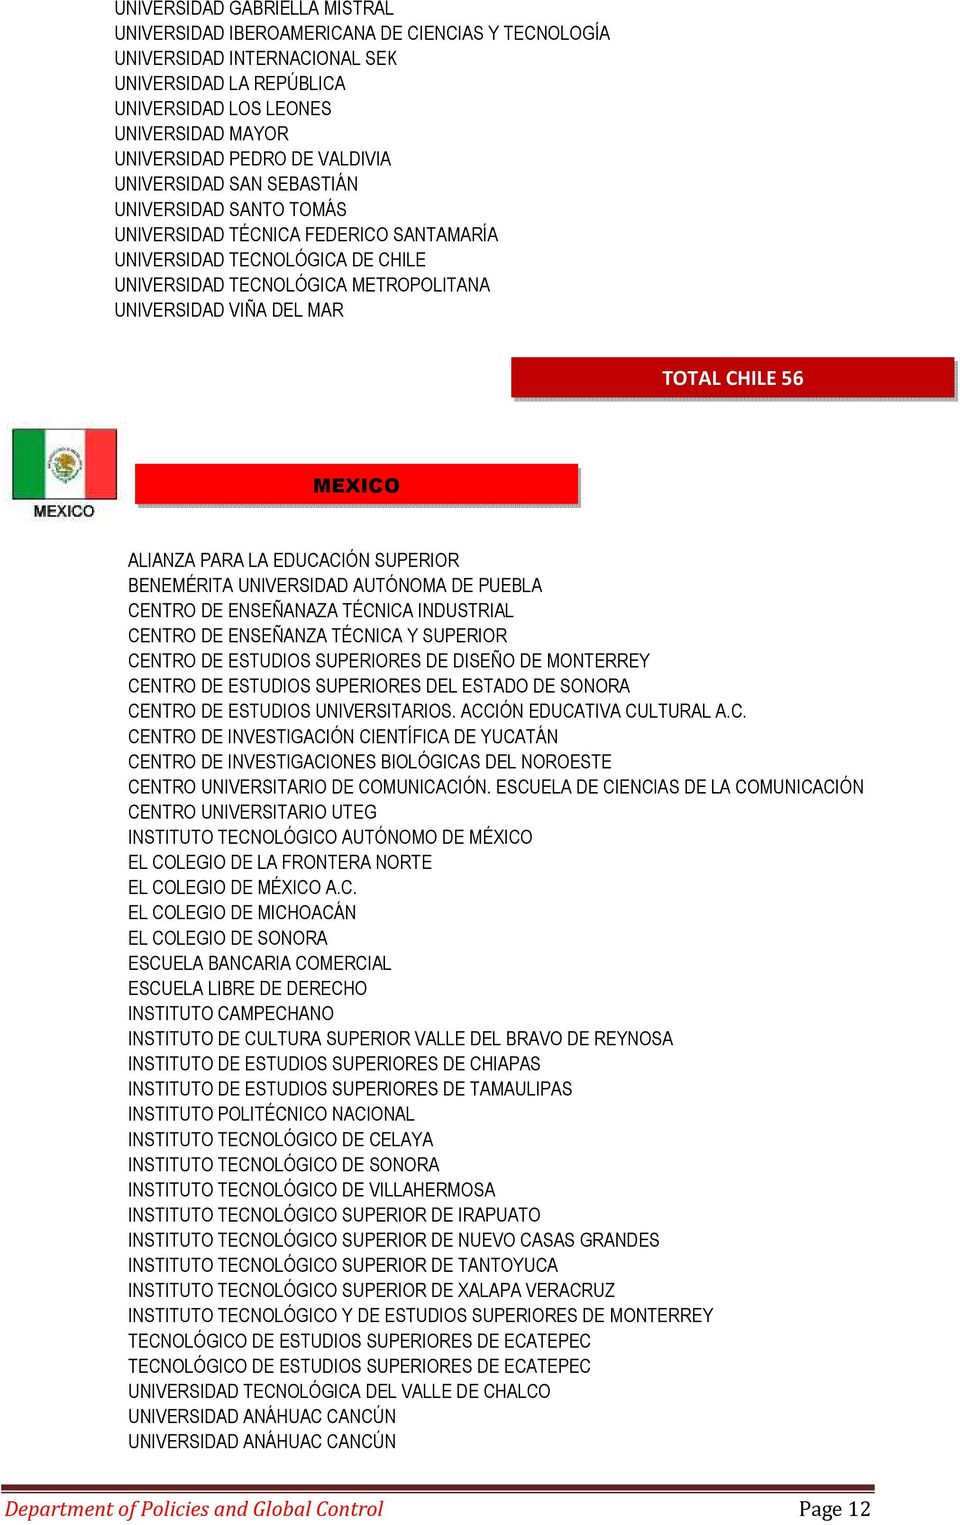 TOTAL CHILE 56 MEXICO ALIANZA PARA LA EDUCACIÓN SUPERIOR BENEMÉRITA UNIVERSIDAD AUTÓNOMA DE PUEBLA CENTRO DE ENSEÑANAZA TÉCNICA INDUSTRIAL CENTRO DE ENSEÑANZA TÉCNICA Y SUPERIOR CENTRO DE ESTUDIOS